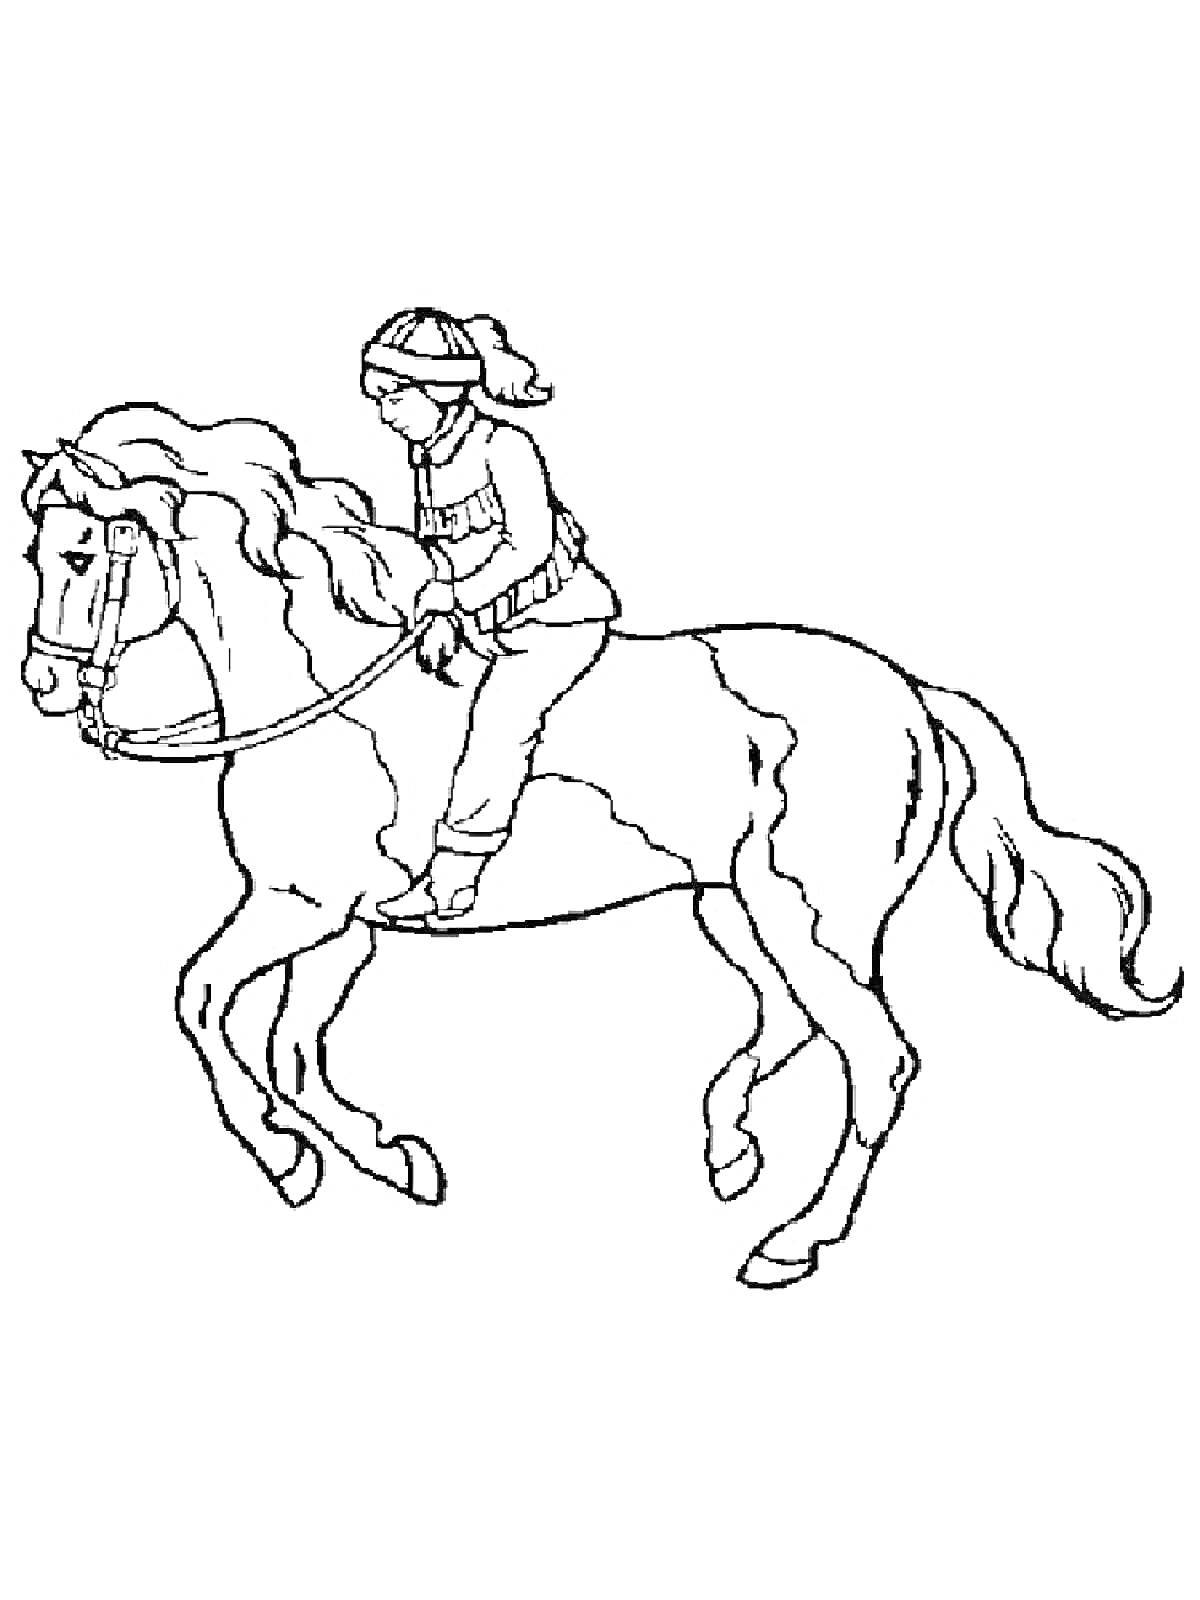 Раскраска Всадник на лошади с шапкой и перчатками, в зимней одежде